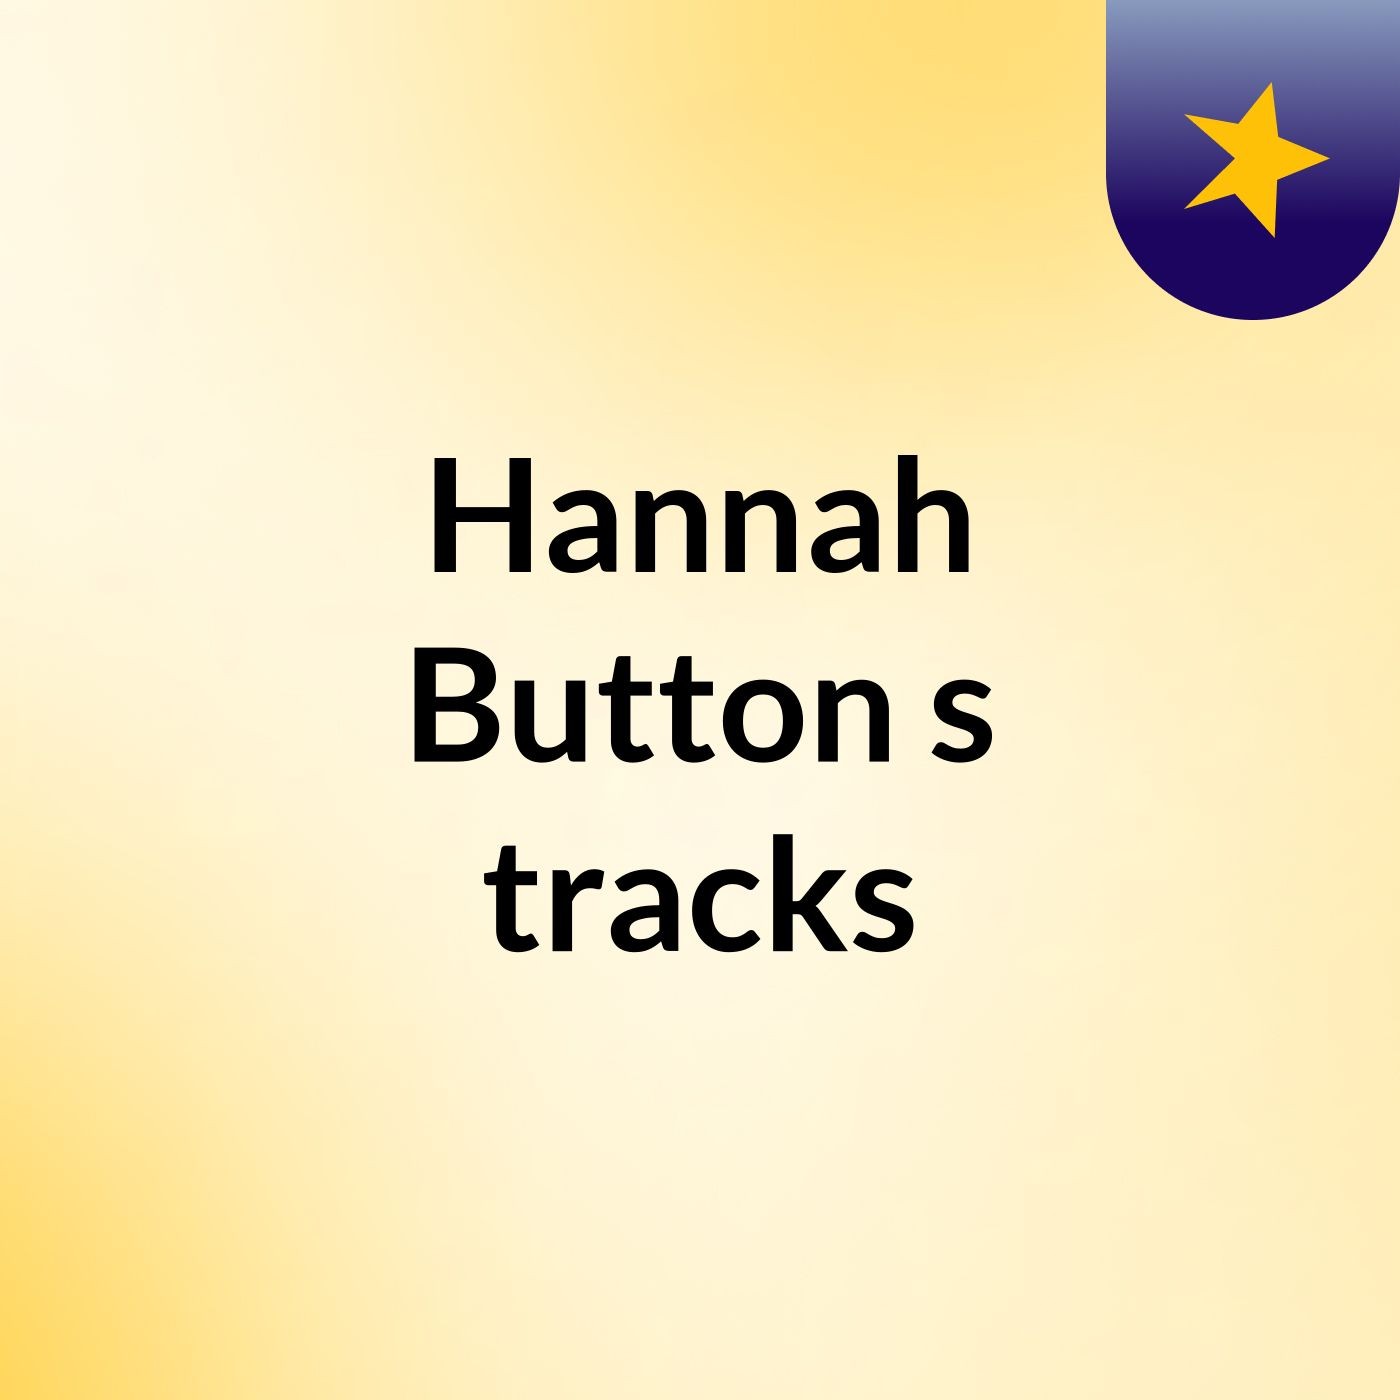 Hannah Button's tracks